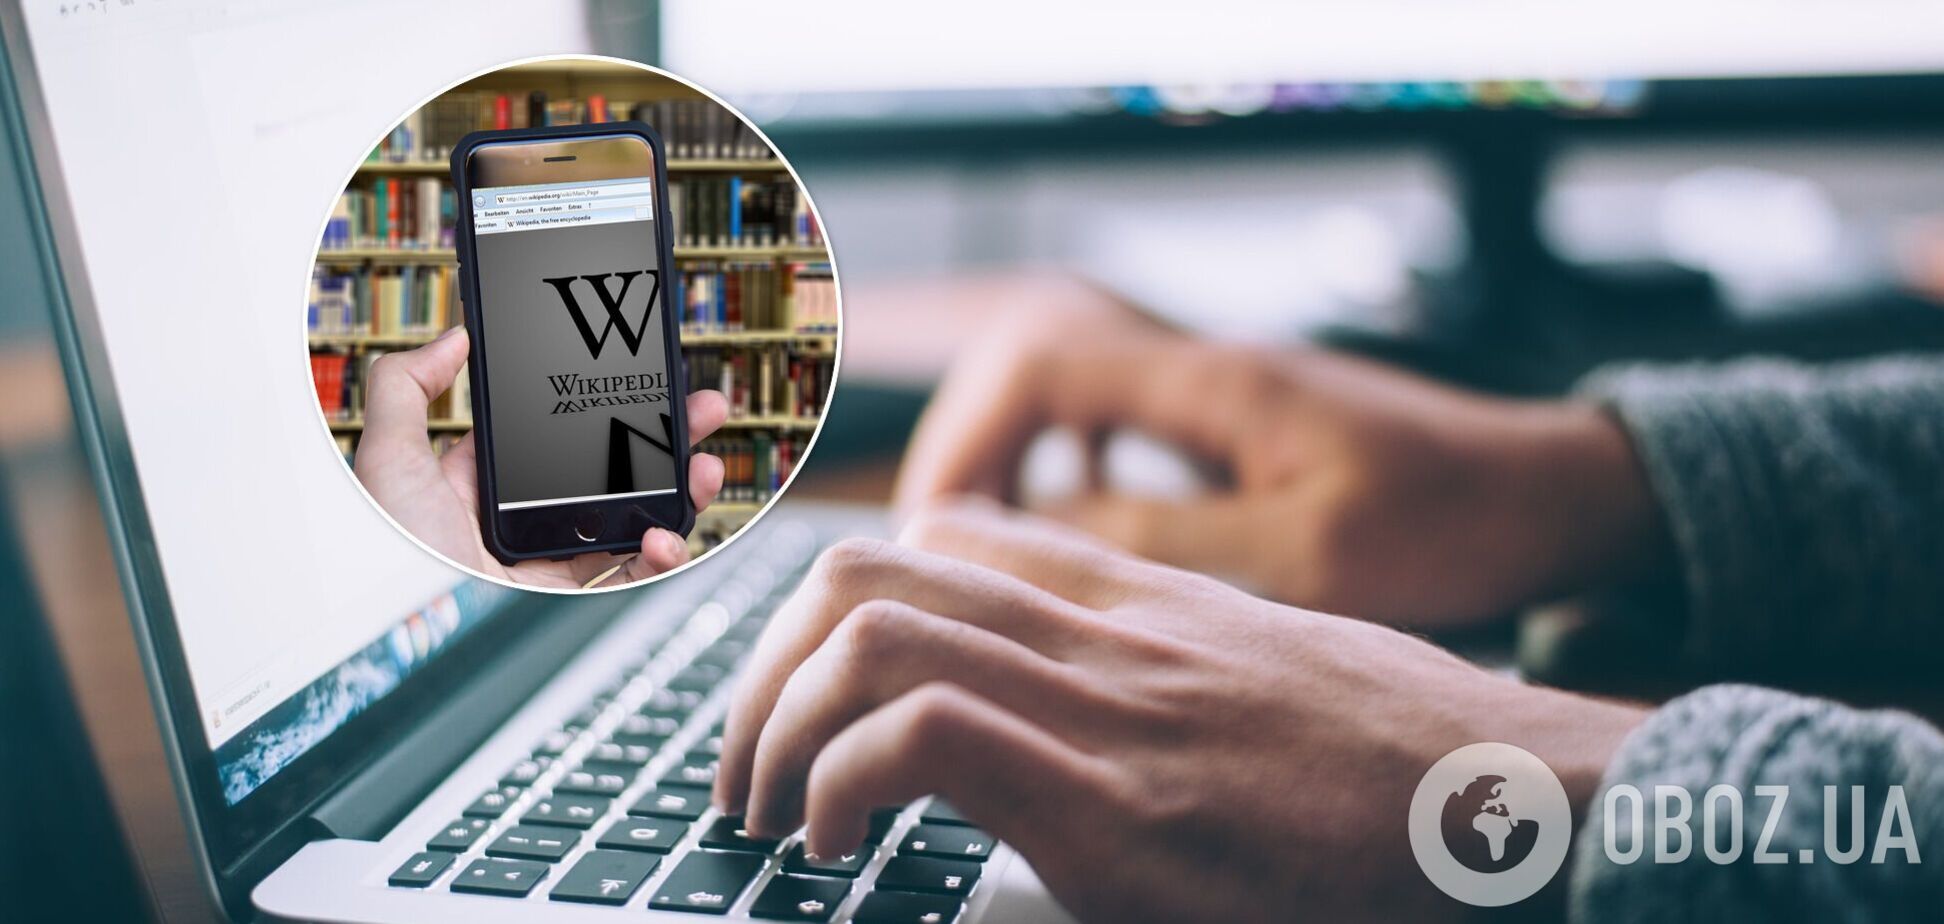 'Википедия' содержит более 55 миллионов статей